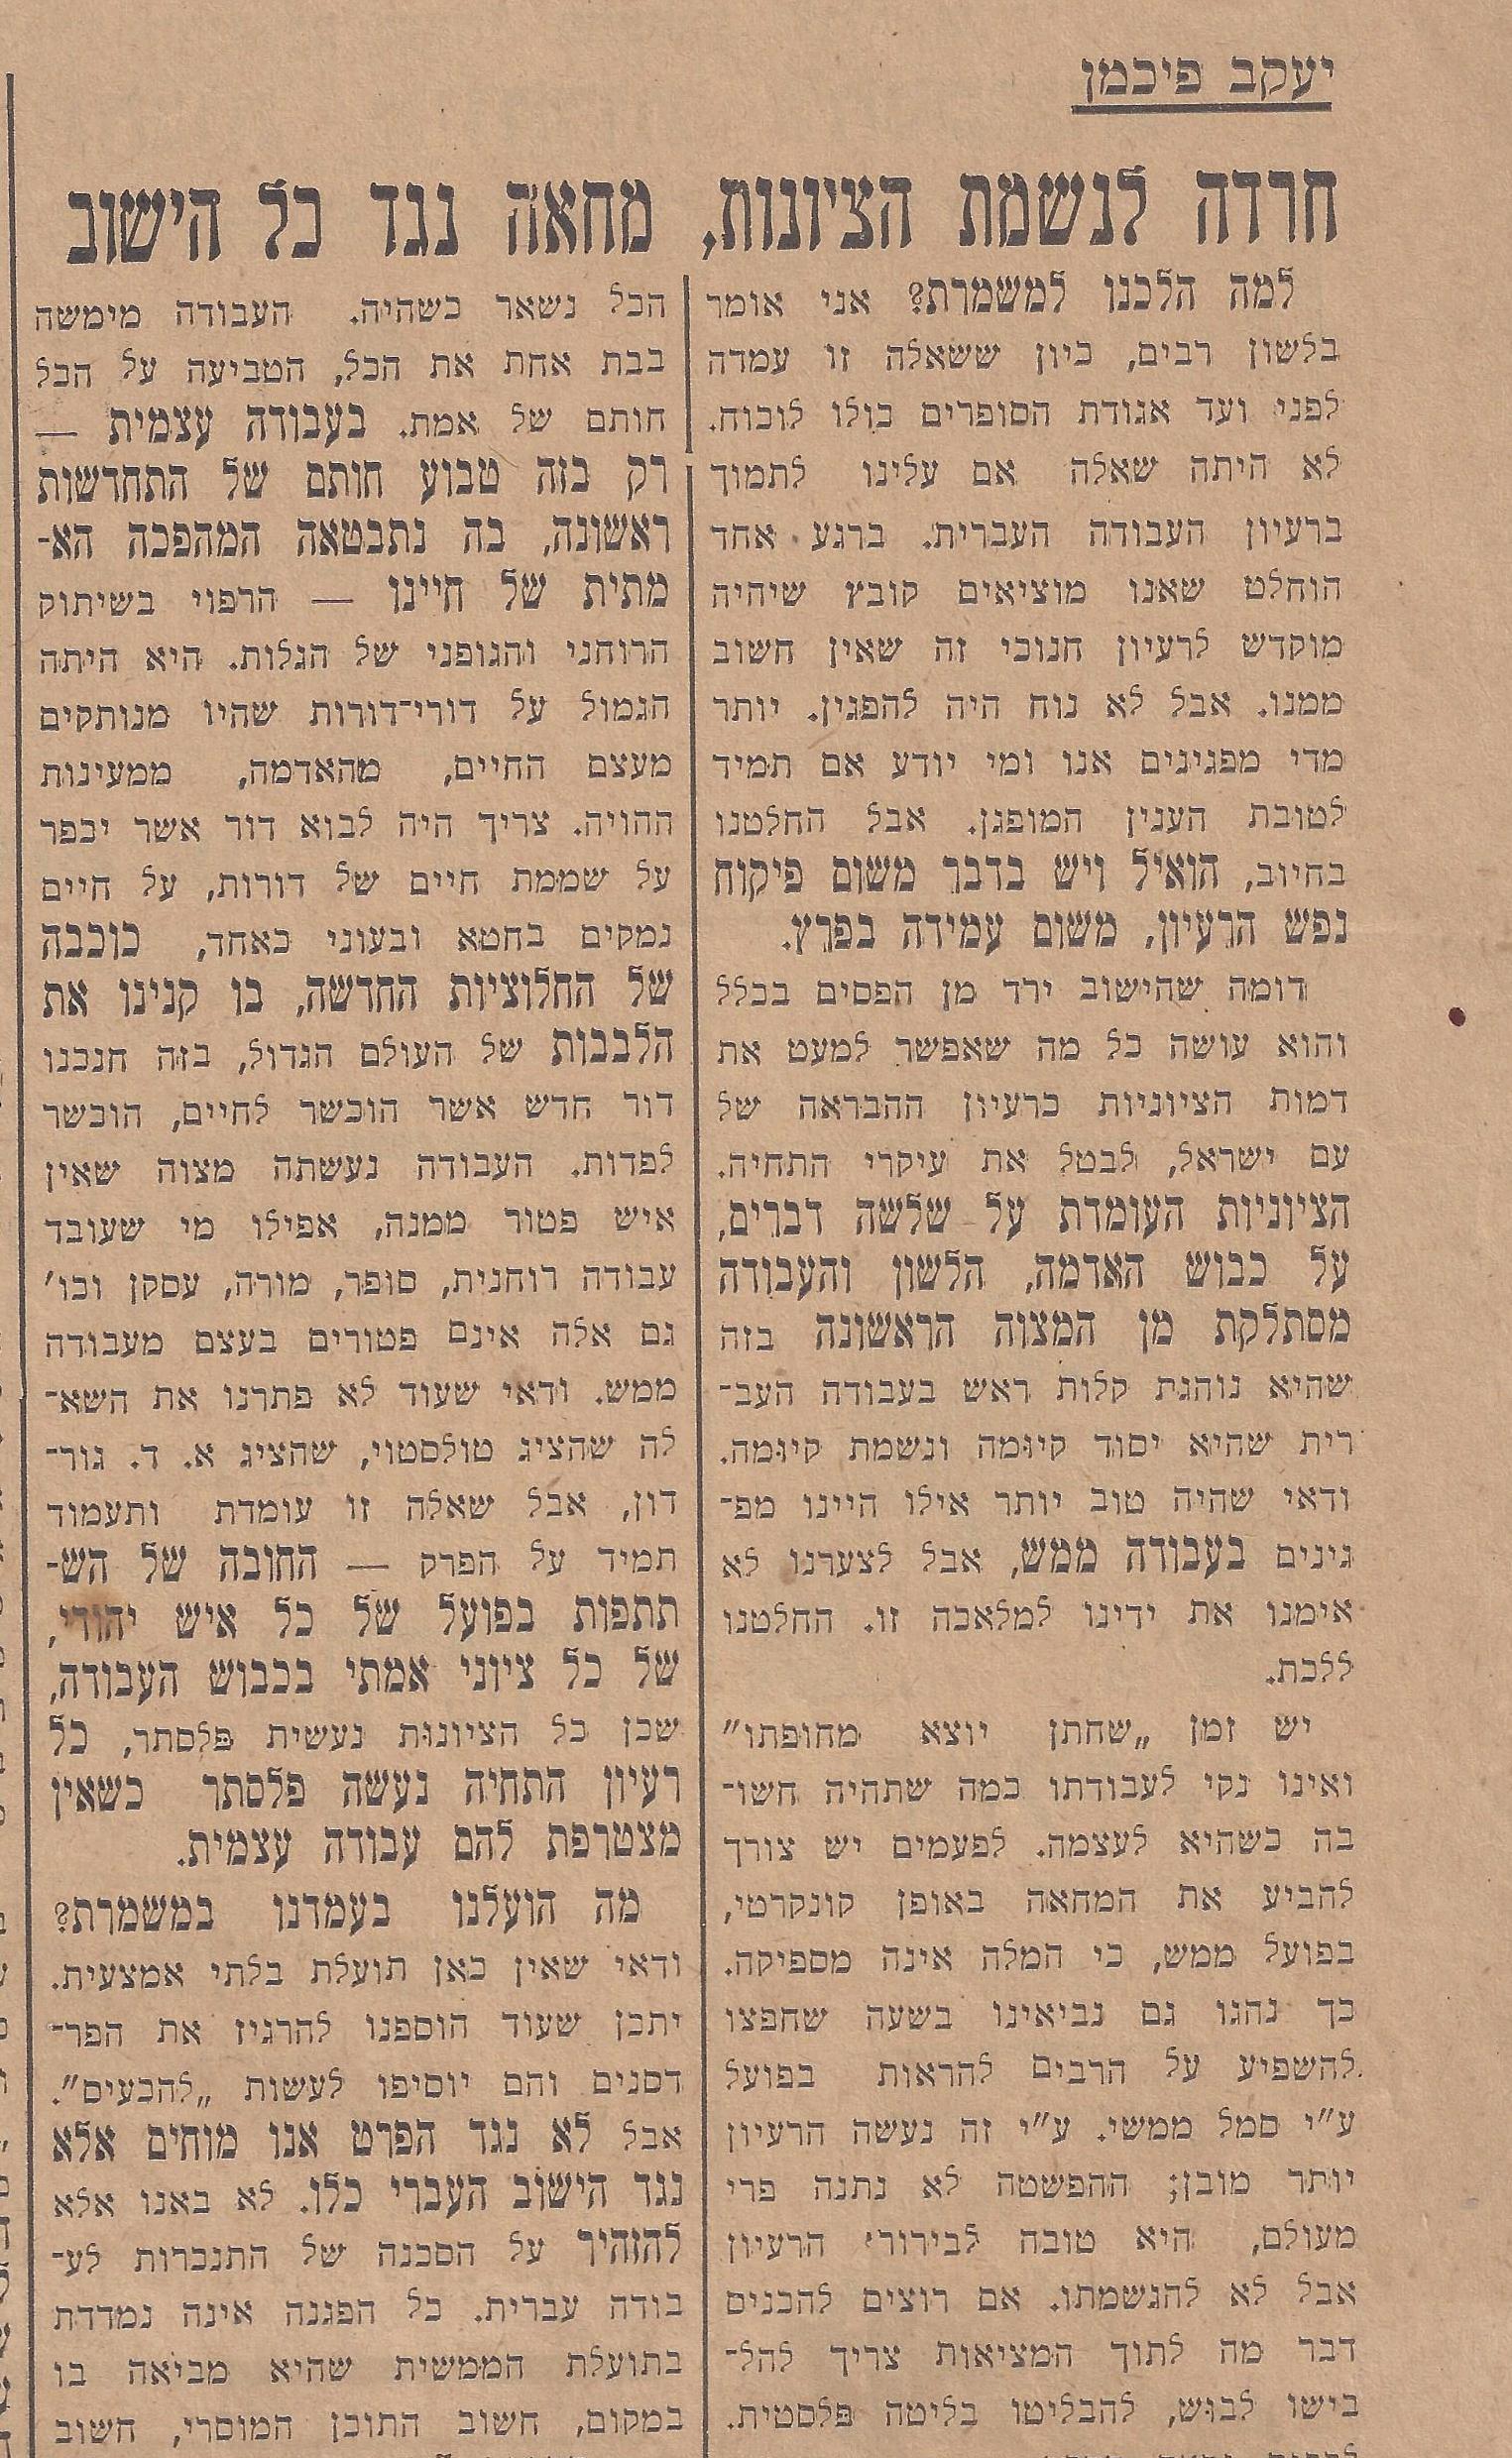 דבר יוניי 29, 1934 חרדה  לנשמת הציונות, מחאה נגד כל הישוב, מאת יעקב פיכמן